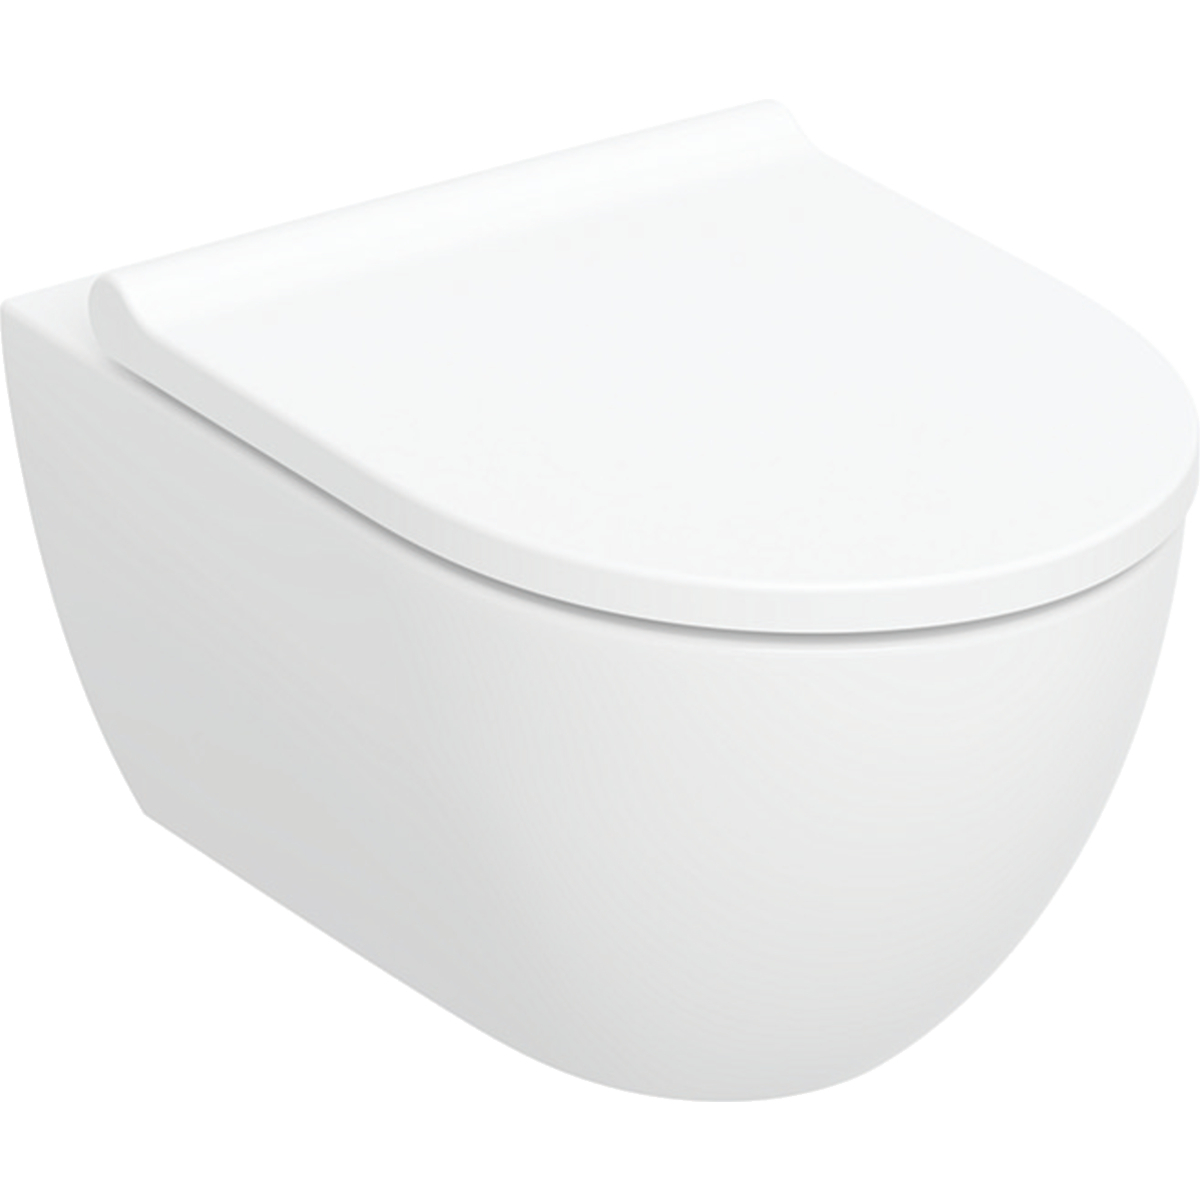 Geberit Acanto Wand-Tiefspül-WC mit WC-Sitz weiß